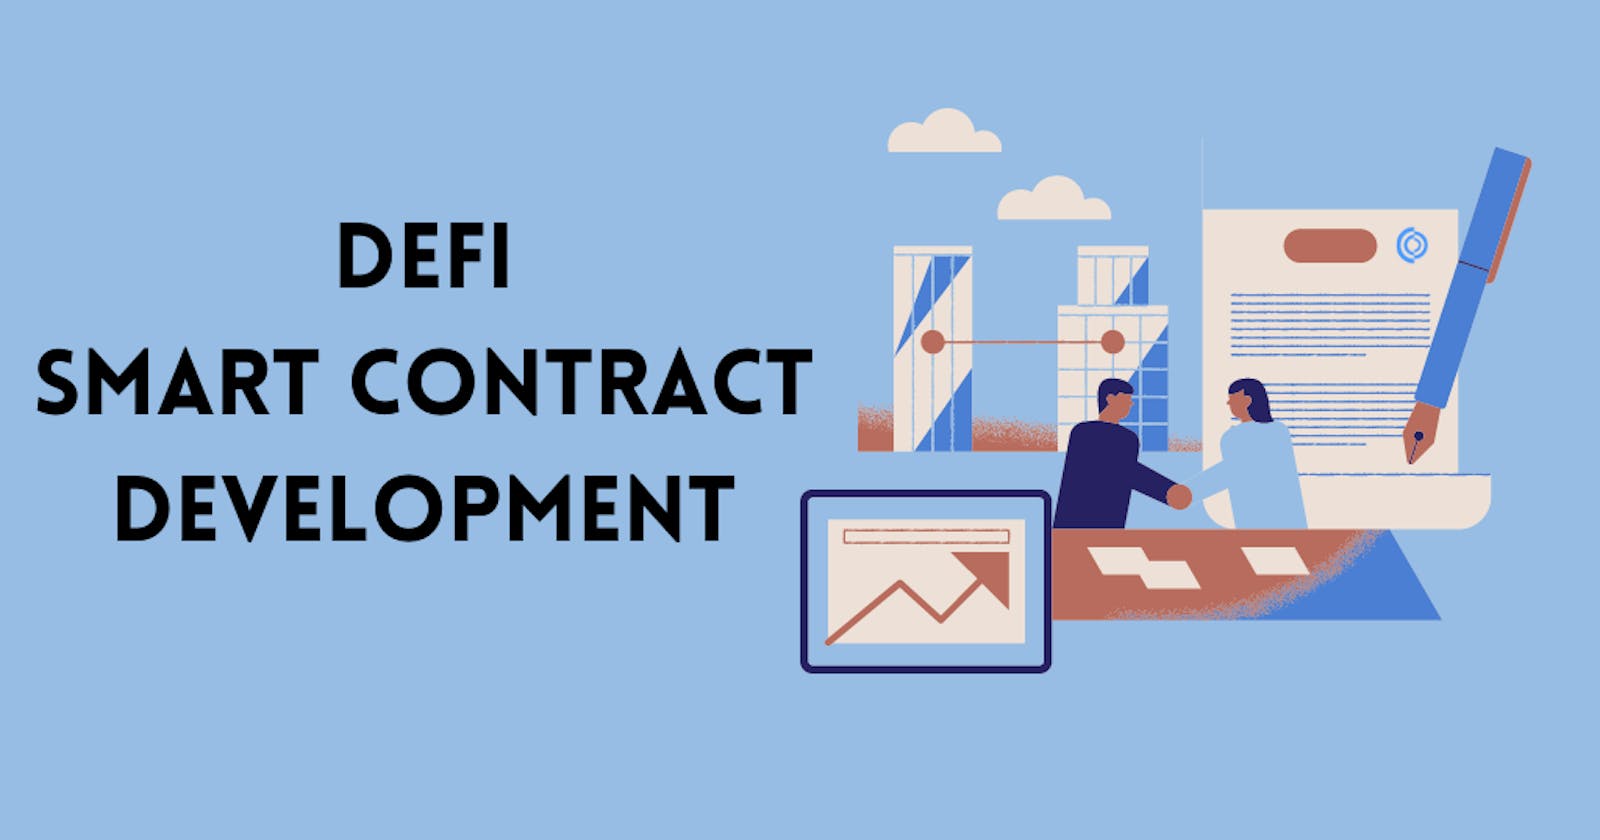 Benefits of DeFi Smart Contract Development